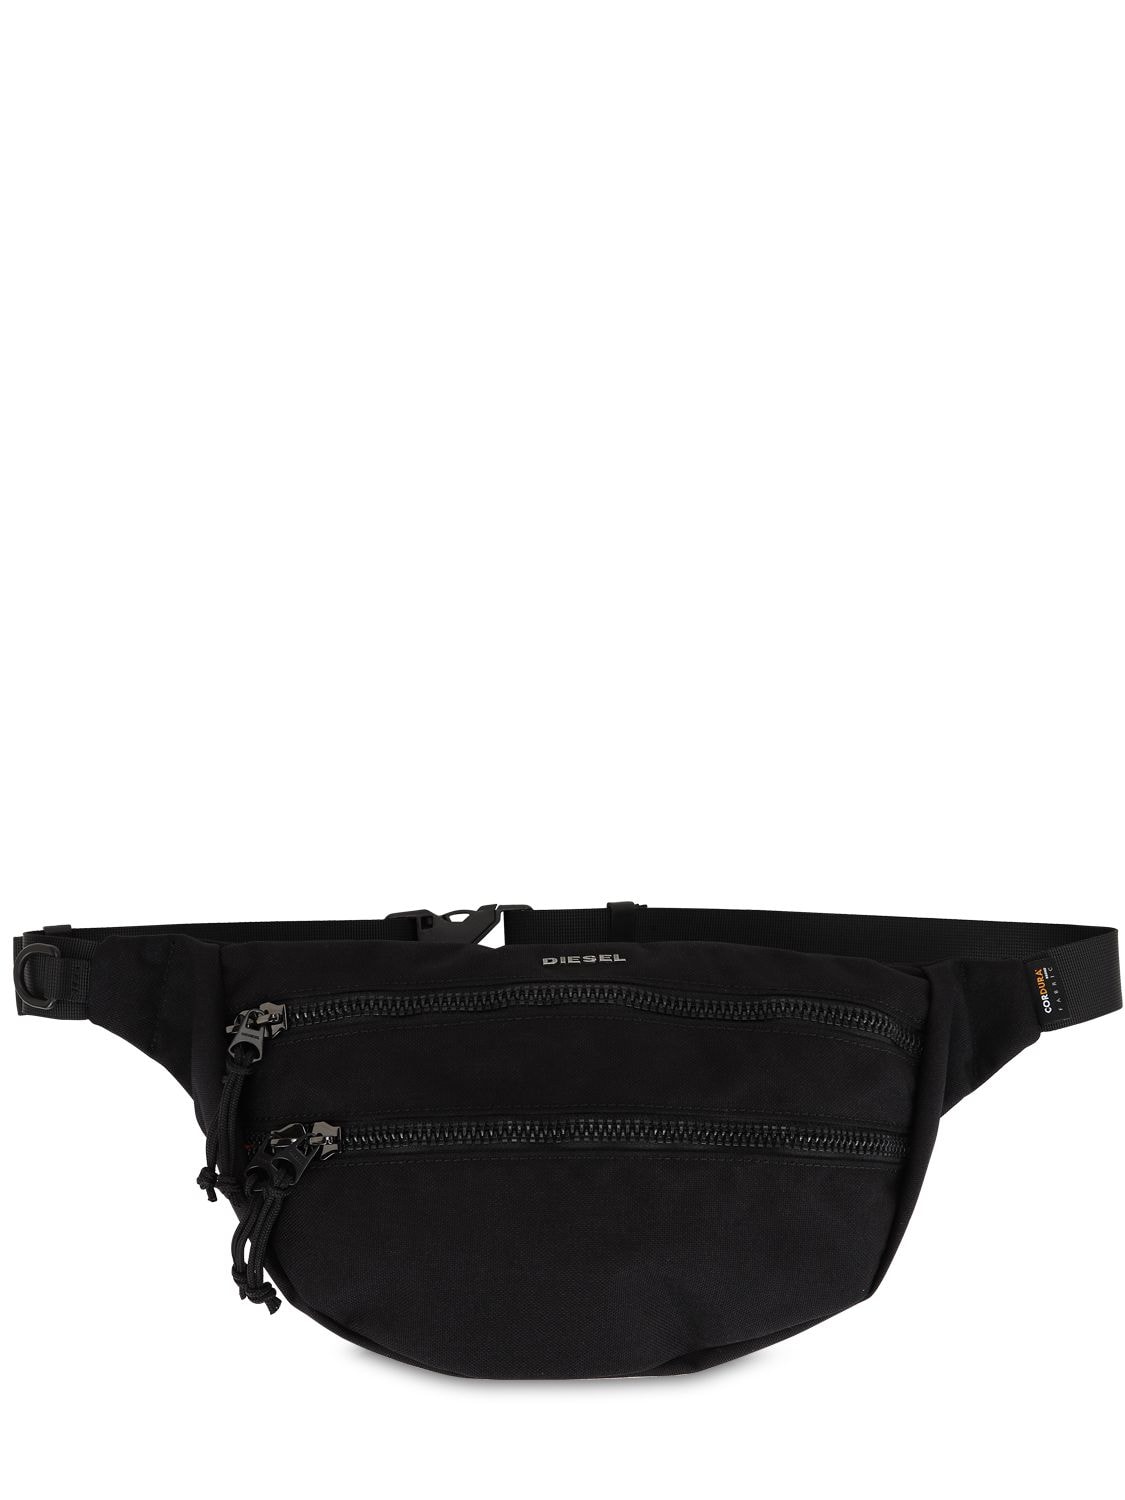 Diesel "urbhanity" Nylon Belt Bag In Black